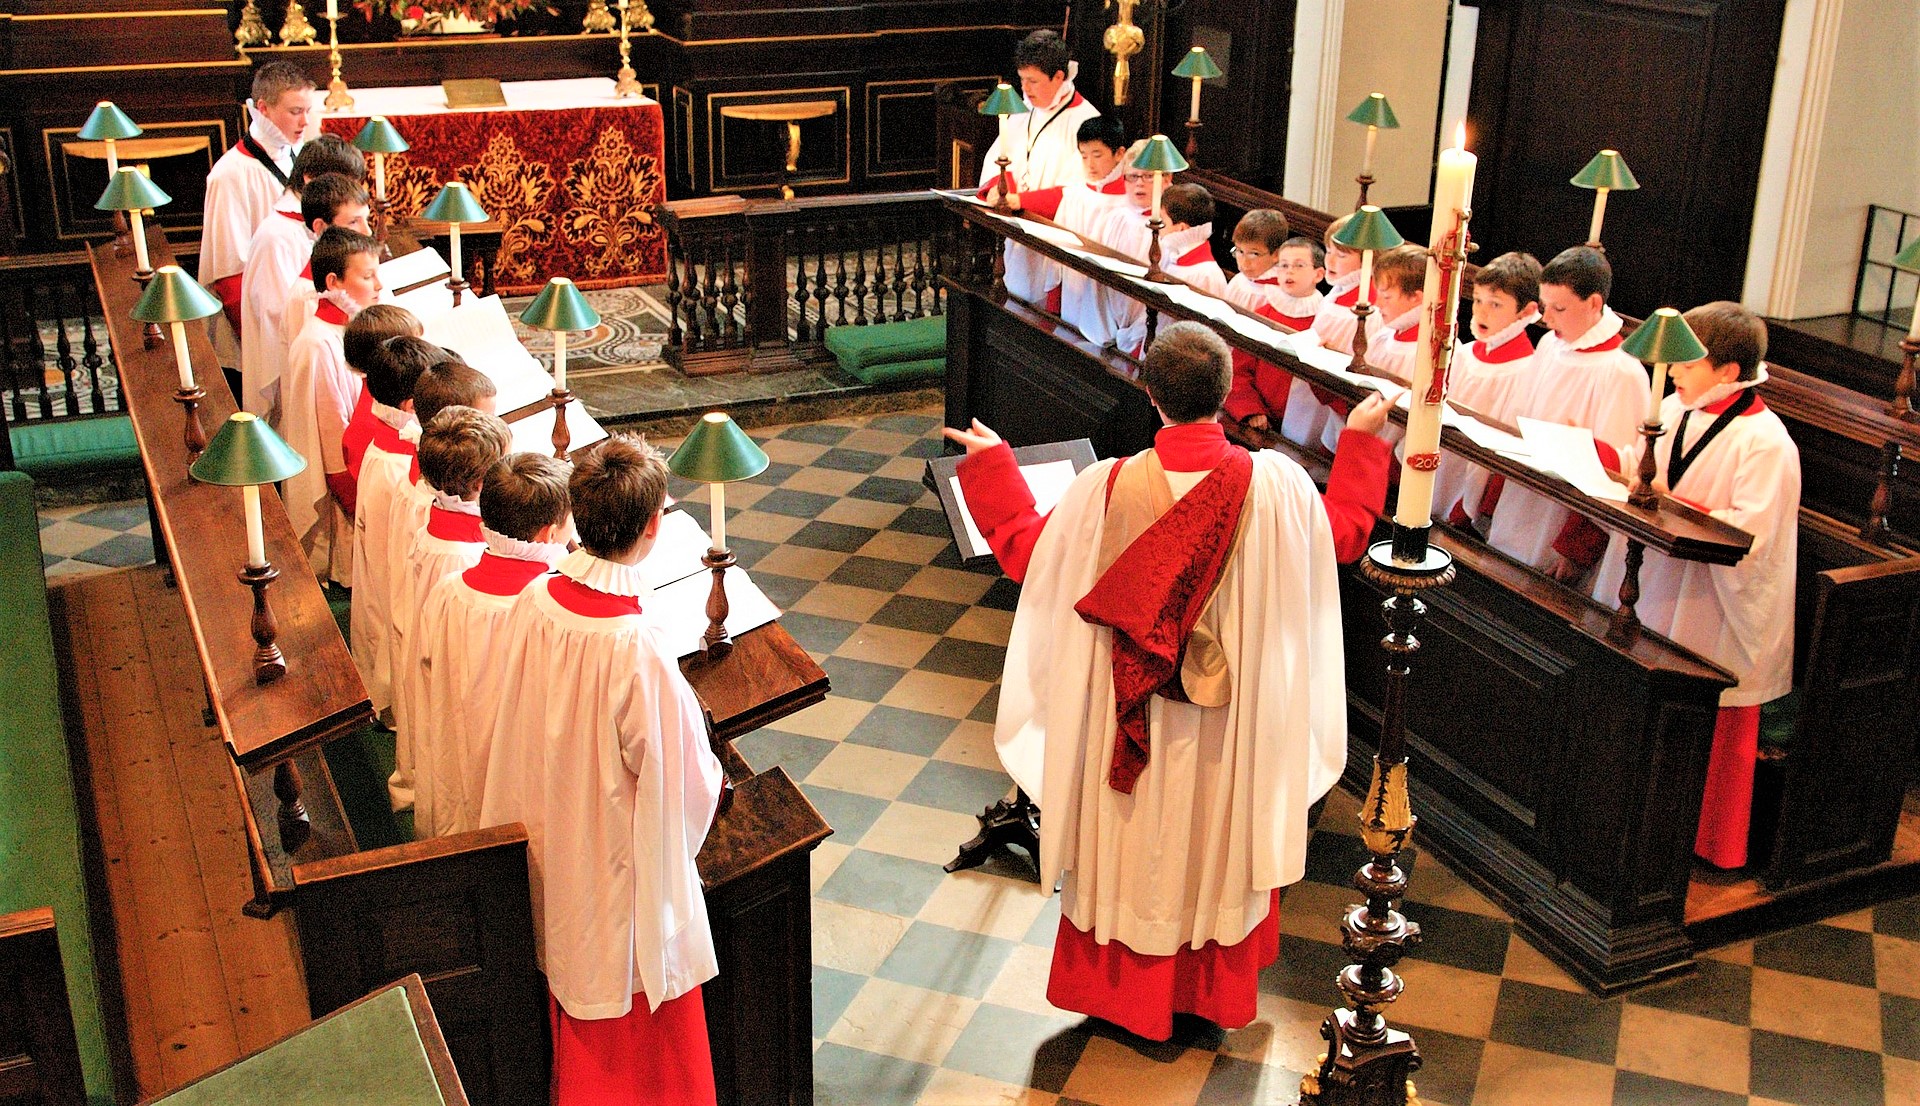 English boys choir rehearsing in a church